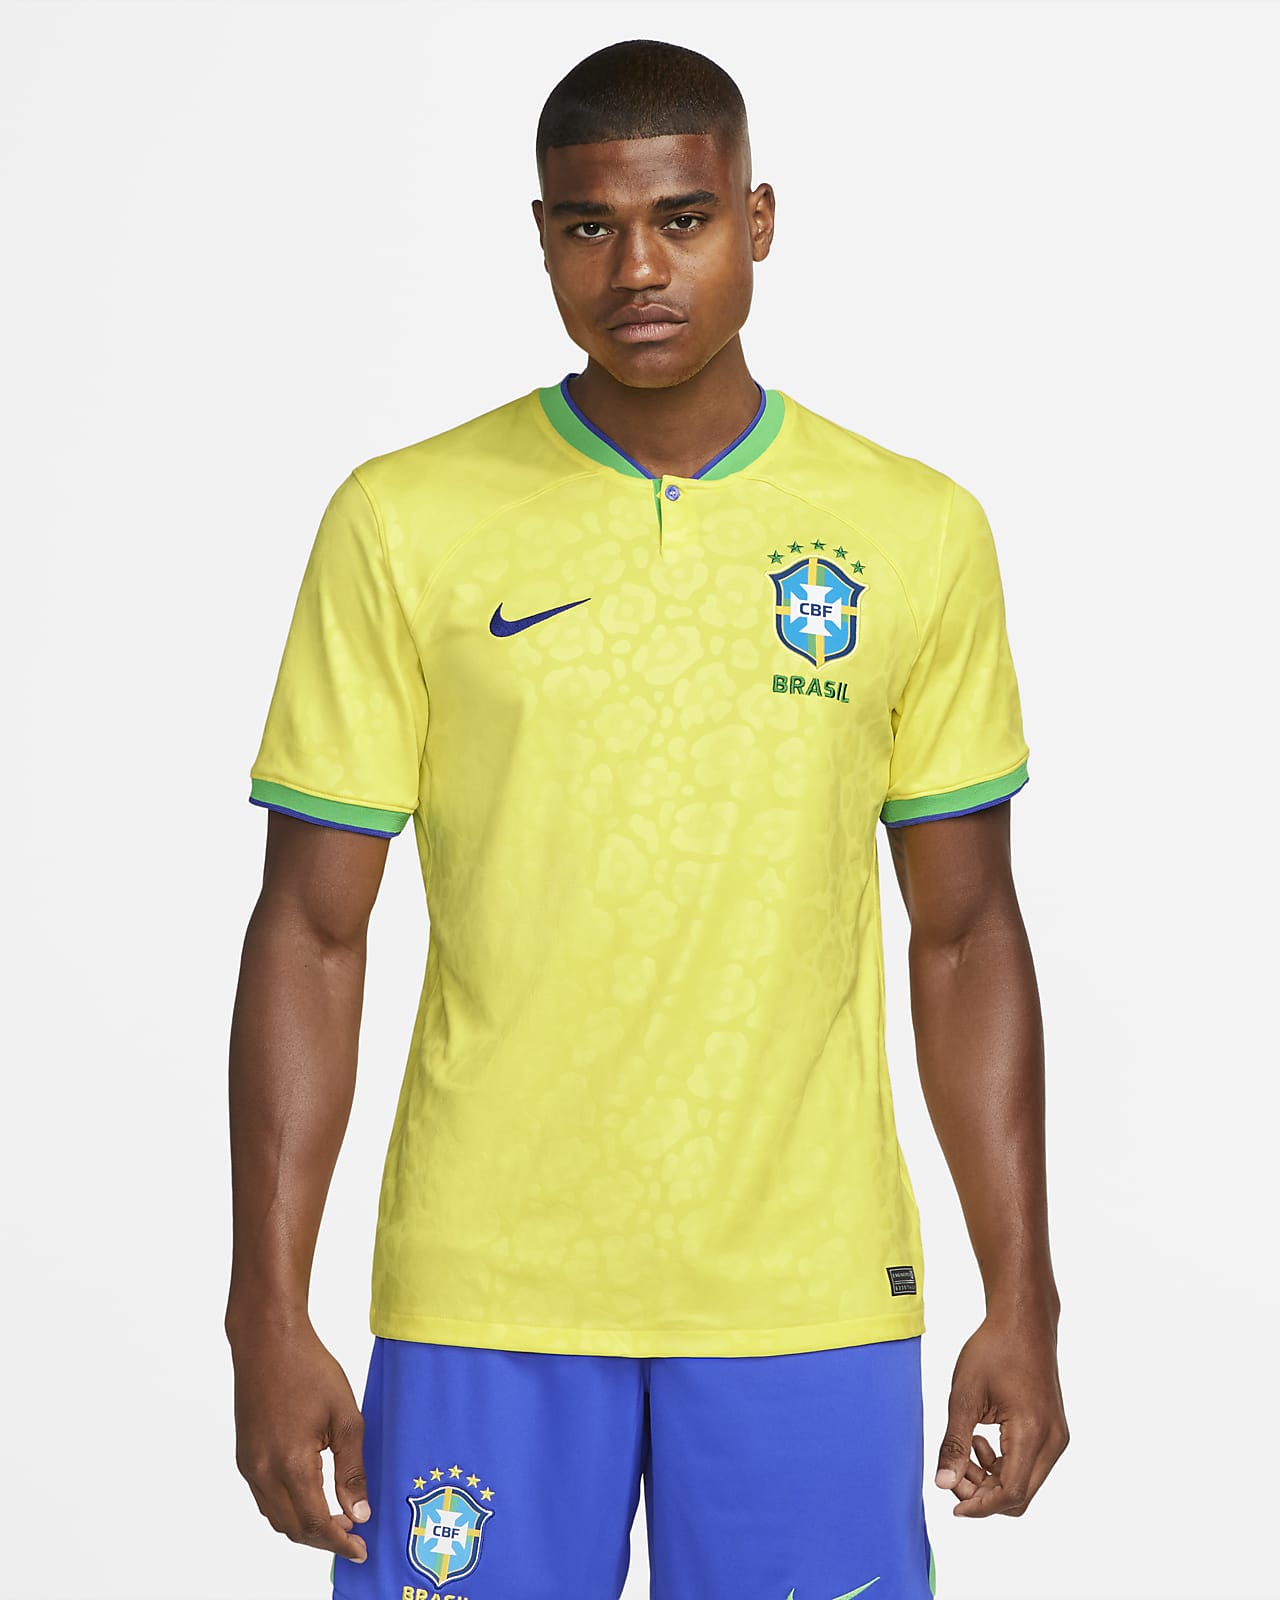 Brasil 10 Brasil Fútbol Camiseta de fútbol Amarillo todas las